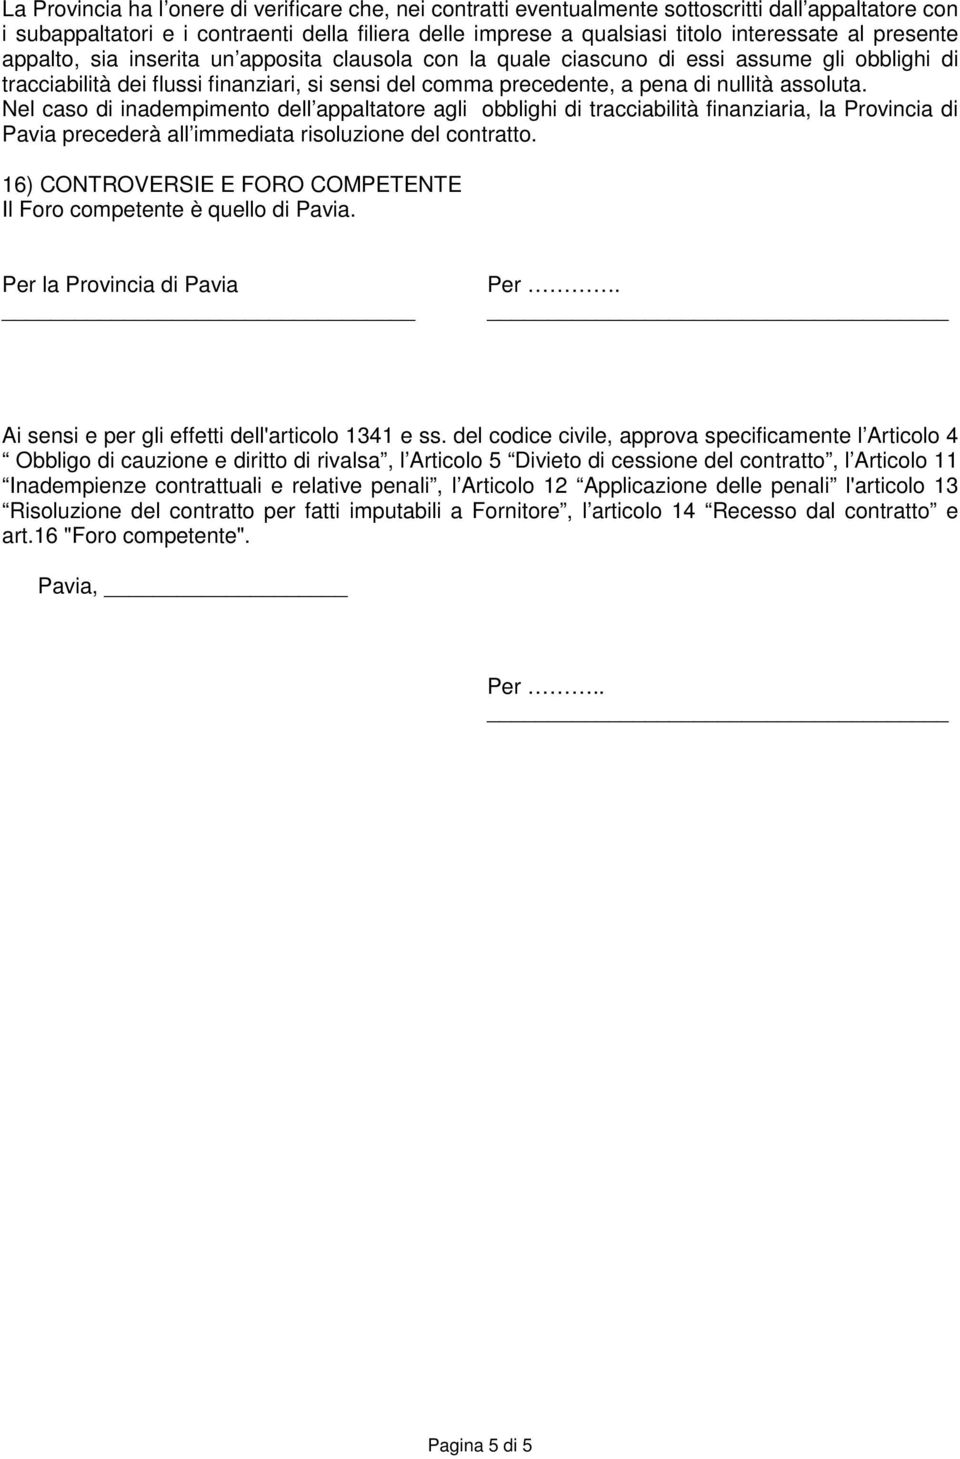 Nel caso di inadempimento dell appaltatore agli obblighi di tracciabilità finanziaria, la Provincia di Pavia precederà all immediata risoluzione del contratto.